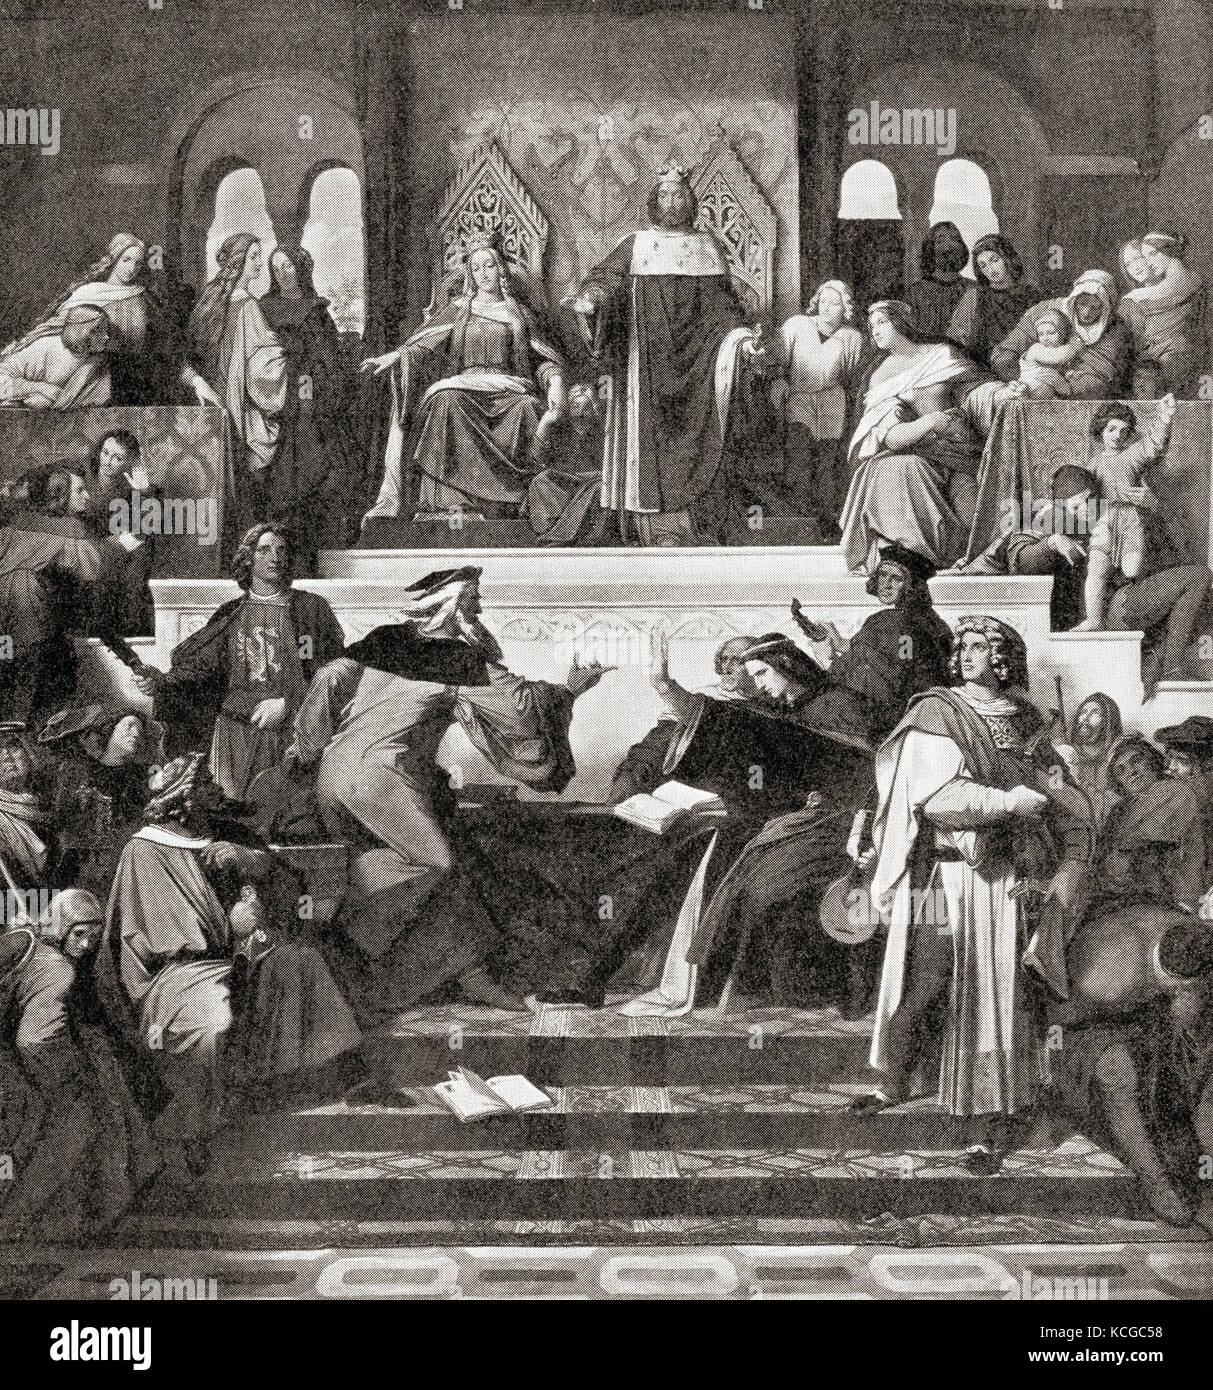 Il Concorso dei Minstrelli o Sängerkrieg, al Castello di Wartburg, in Germania, nel 1207. Dalla Storia delle Nazioni di Hutchinson, pubblicato nel 1915. Foto Stock